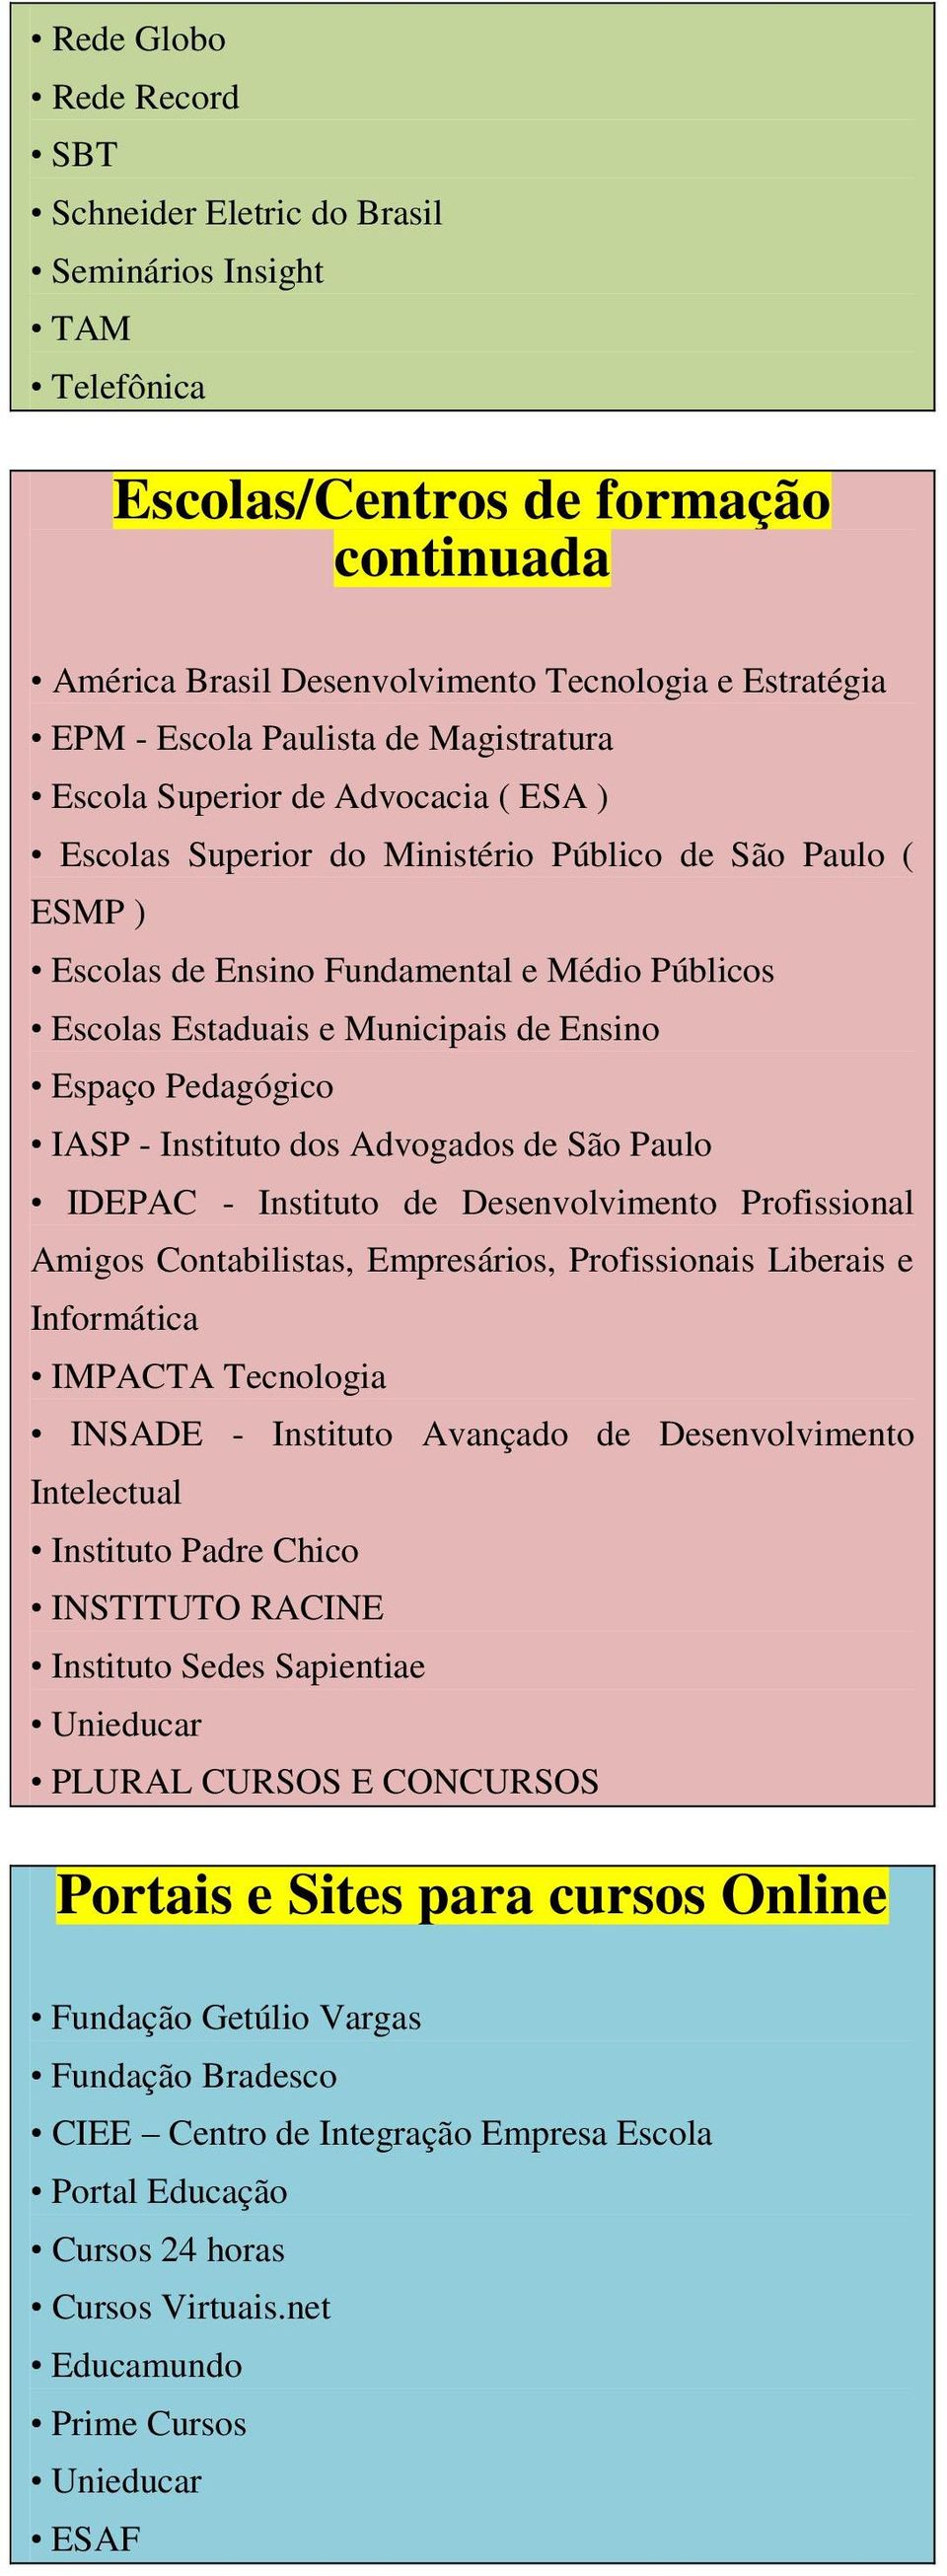 Municipais de Ensino Espaço Pedagógico IASP - Instituto dos Advogados de São Paulo IDEPAC - Instituto de Desenvolvimento Profissional Amigos Contabilistas, Empresários, Profissionais Liberais e